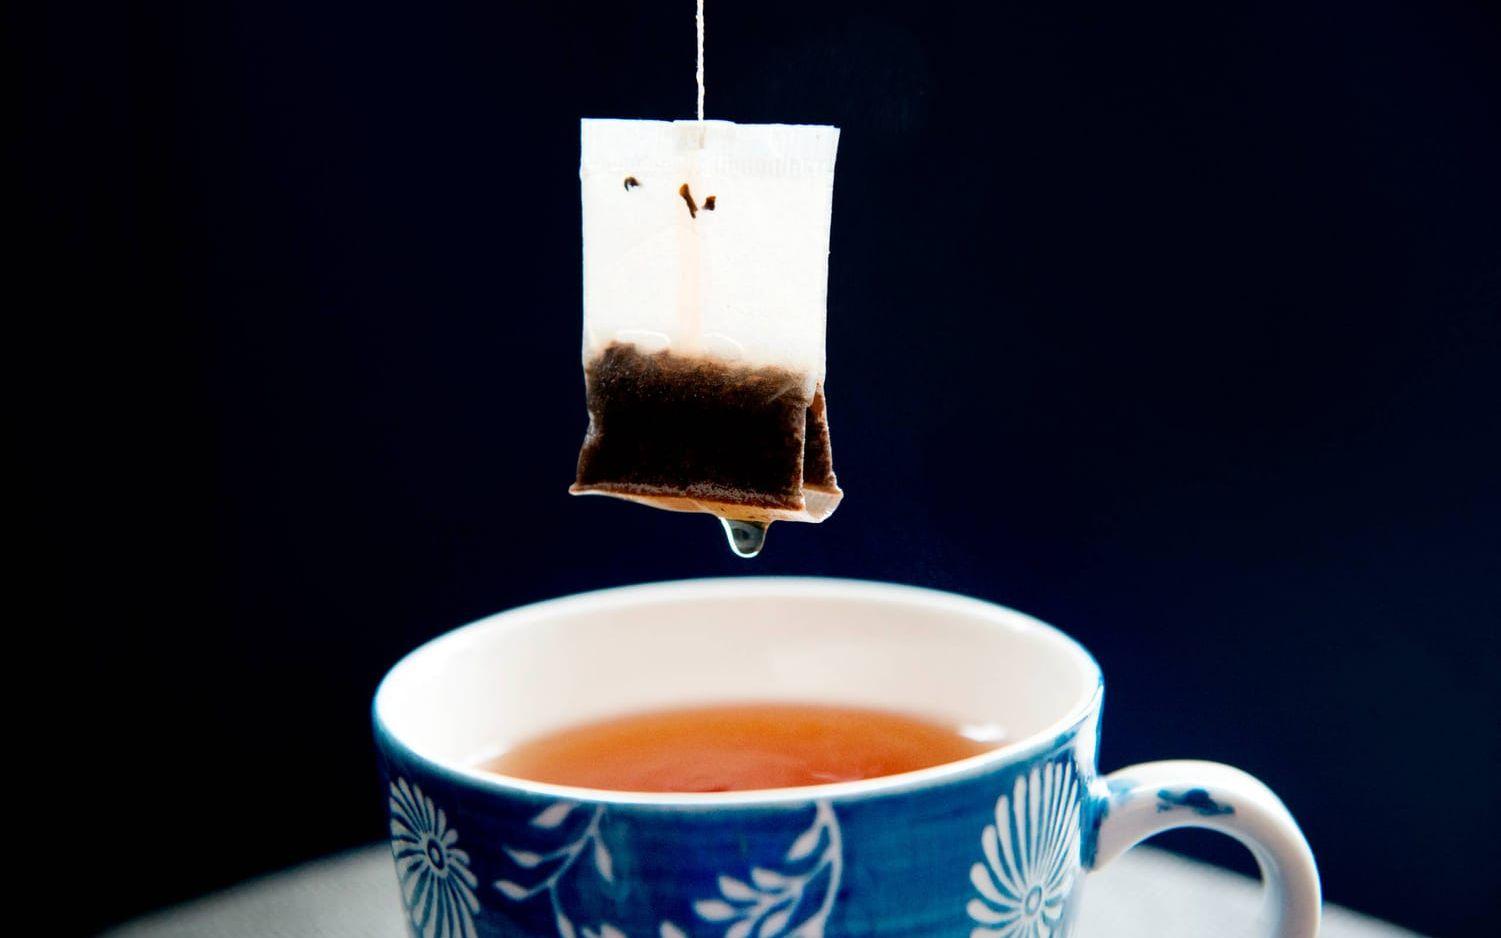 Tepåsar innehåller en mängd olika bekämpningsmedel. Vill du äta mindre kemikalier gör du klokt i att välja eko. Bild: TT